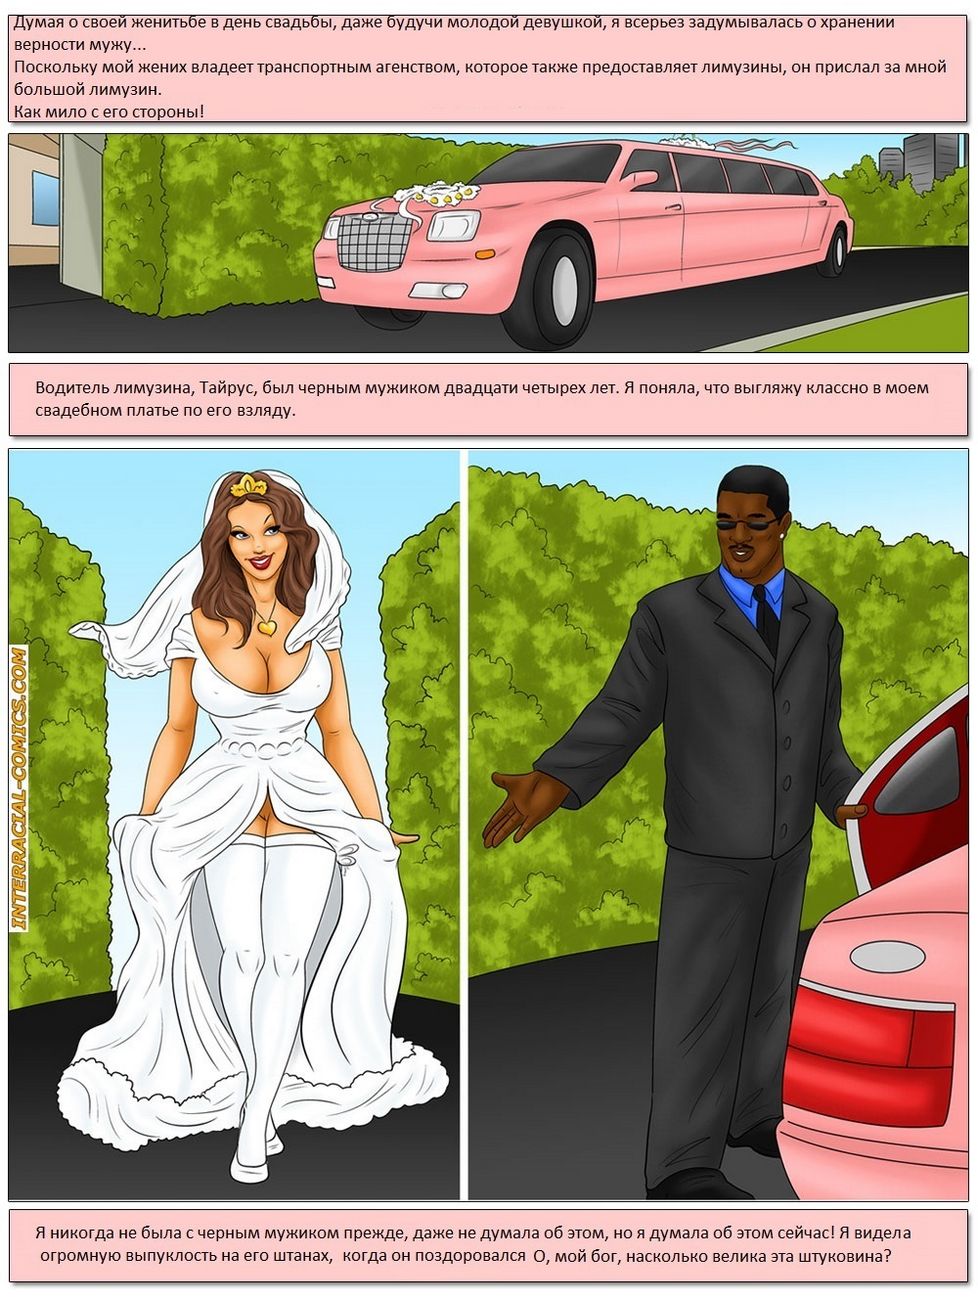 Водитель лимузина трахнул невесту по дороге на свадьбу порно видео